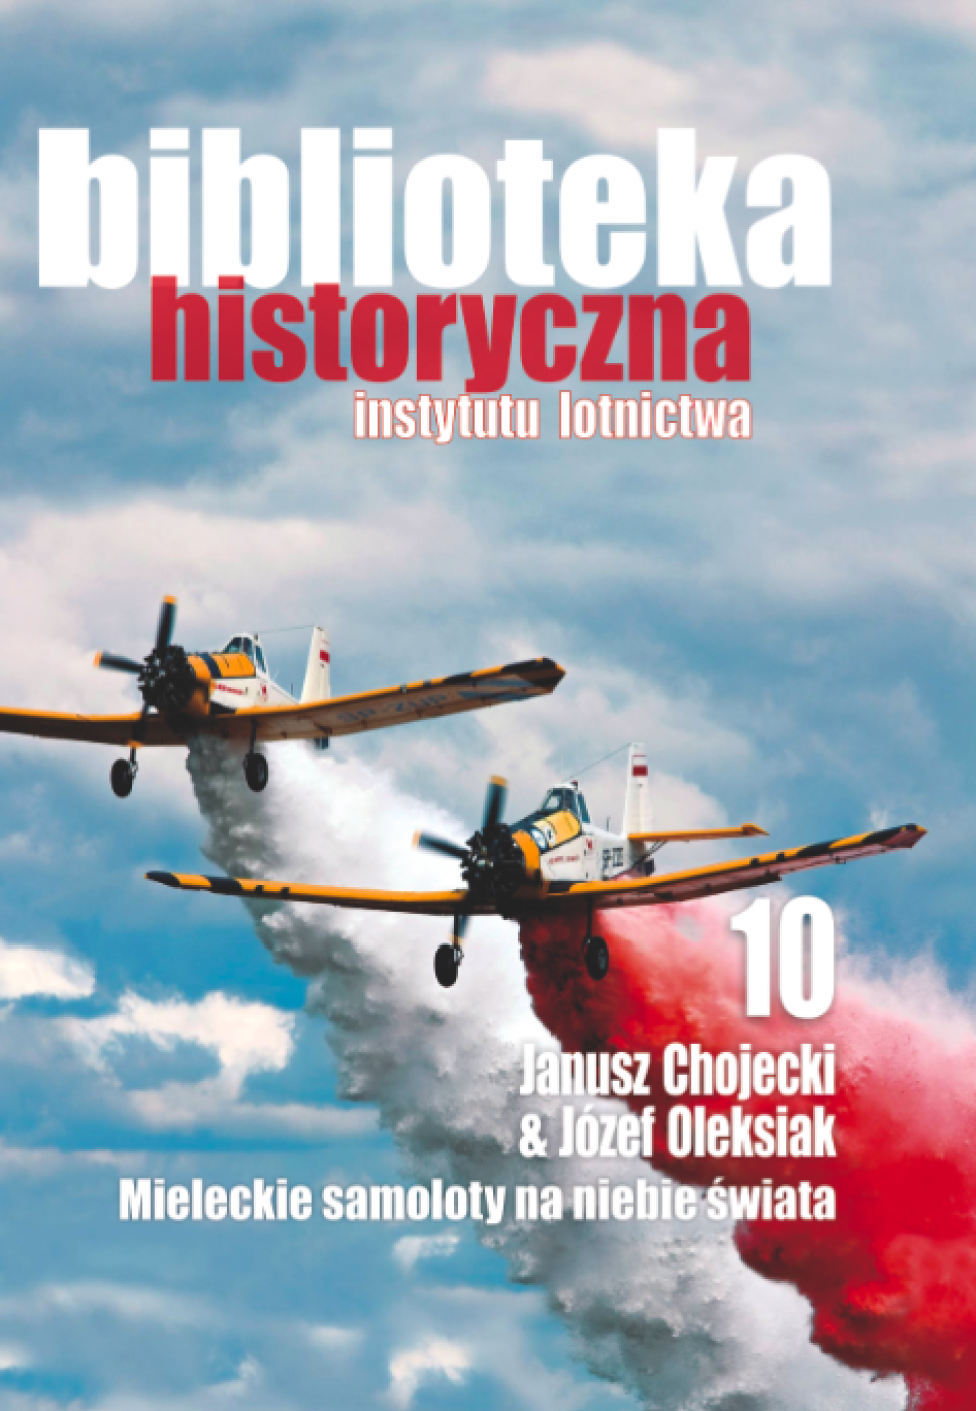 Biblioteka Historyczna Instytutu Lotnictwa: Mieleckie samoloty na niebie świata - Janusz Chojecki i Józef Oleksiak